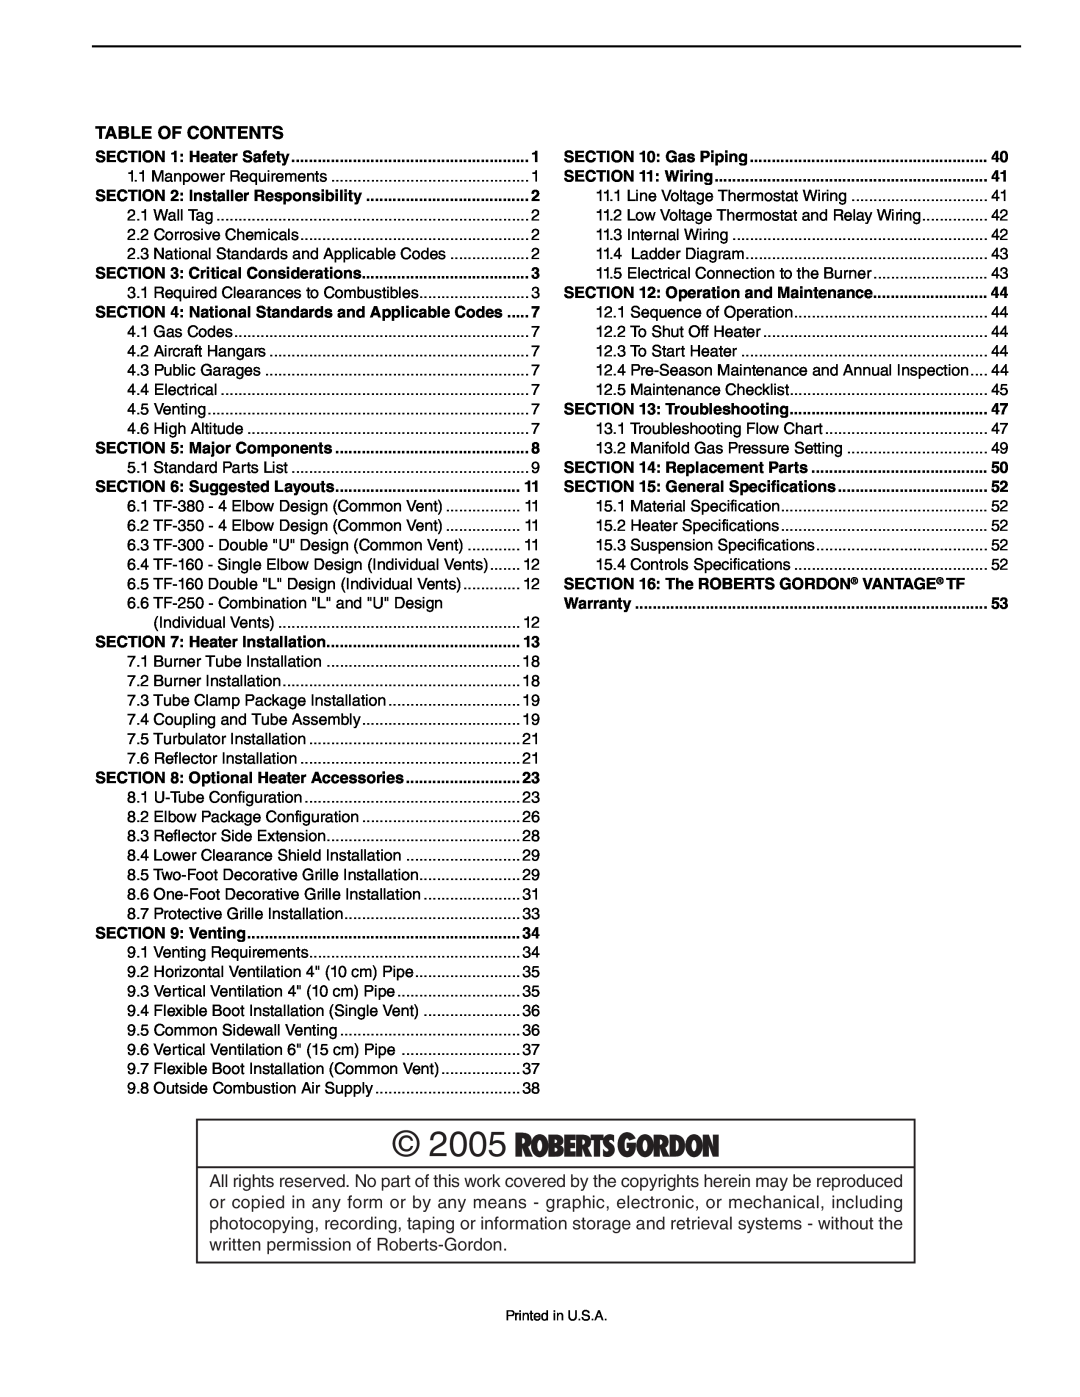 Roberts Gorden TF-200, TF-350, TF-300, TF-120, TF-160, TF-250, TF-380 service manual 2005, Table Of Contents 